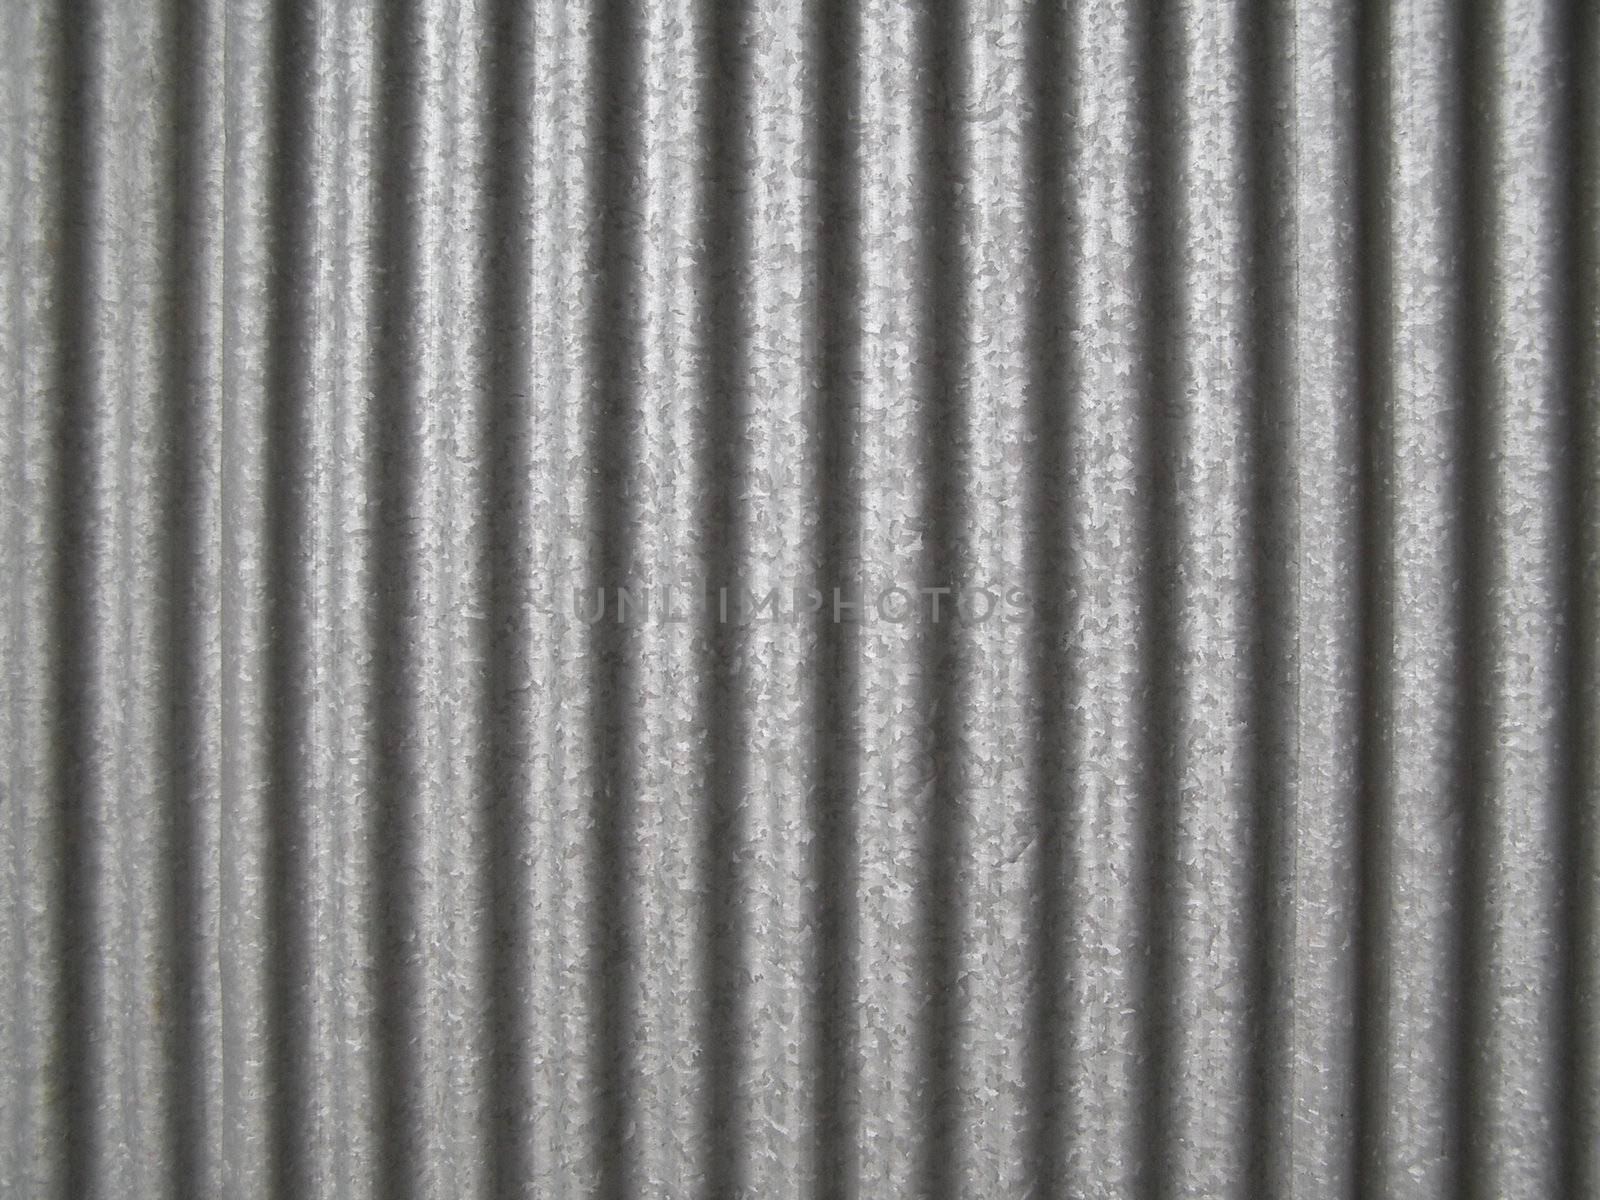 Corrugated steel